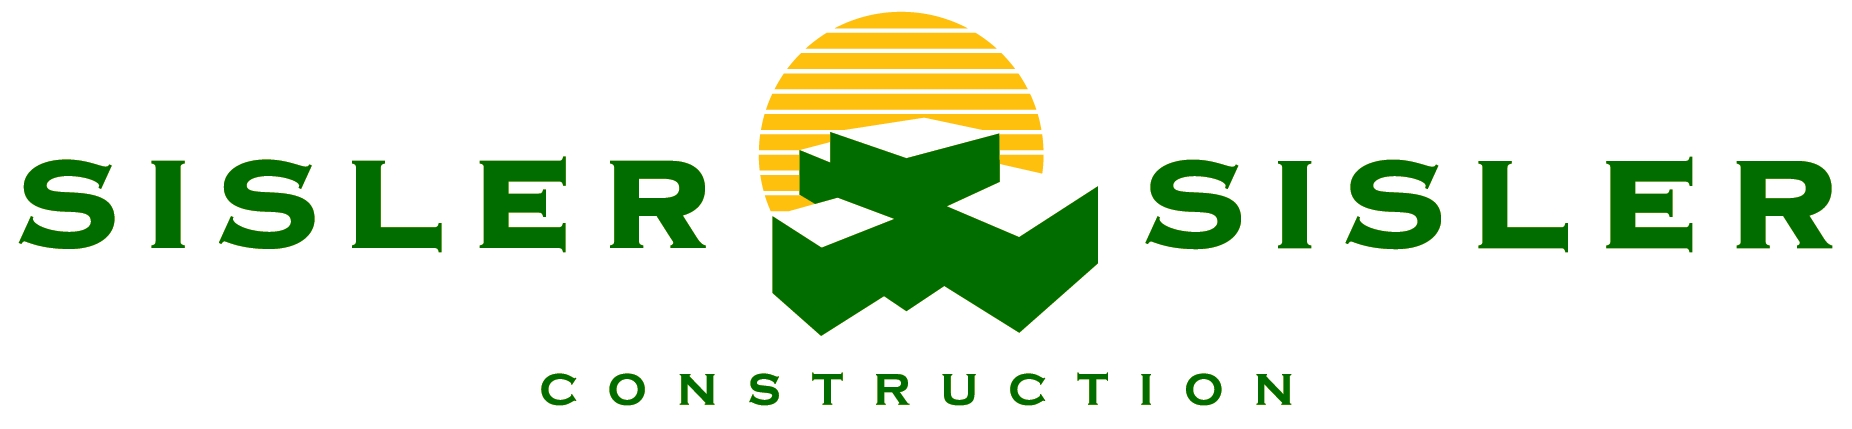 Sisler & Sisler Construction Logo